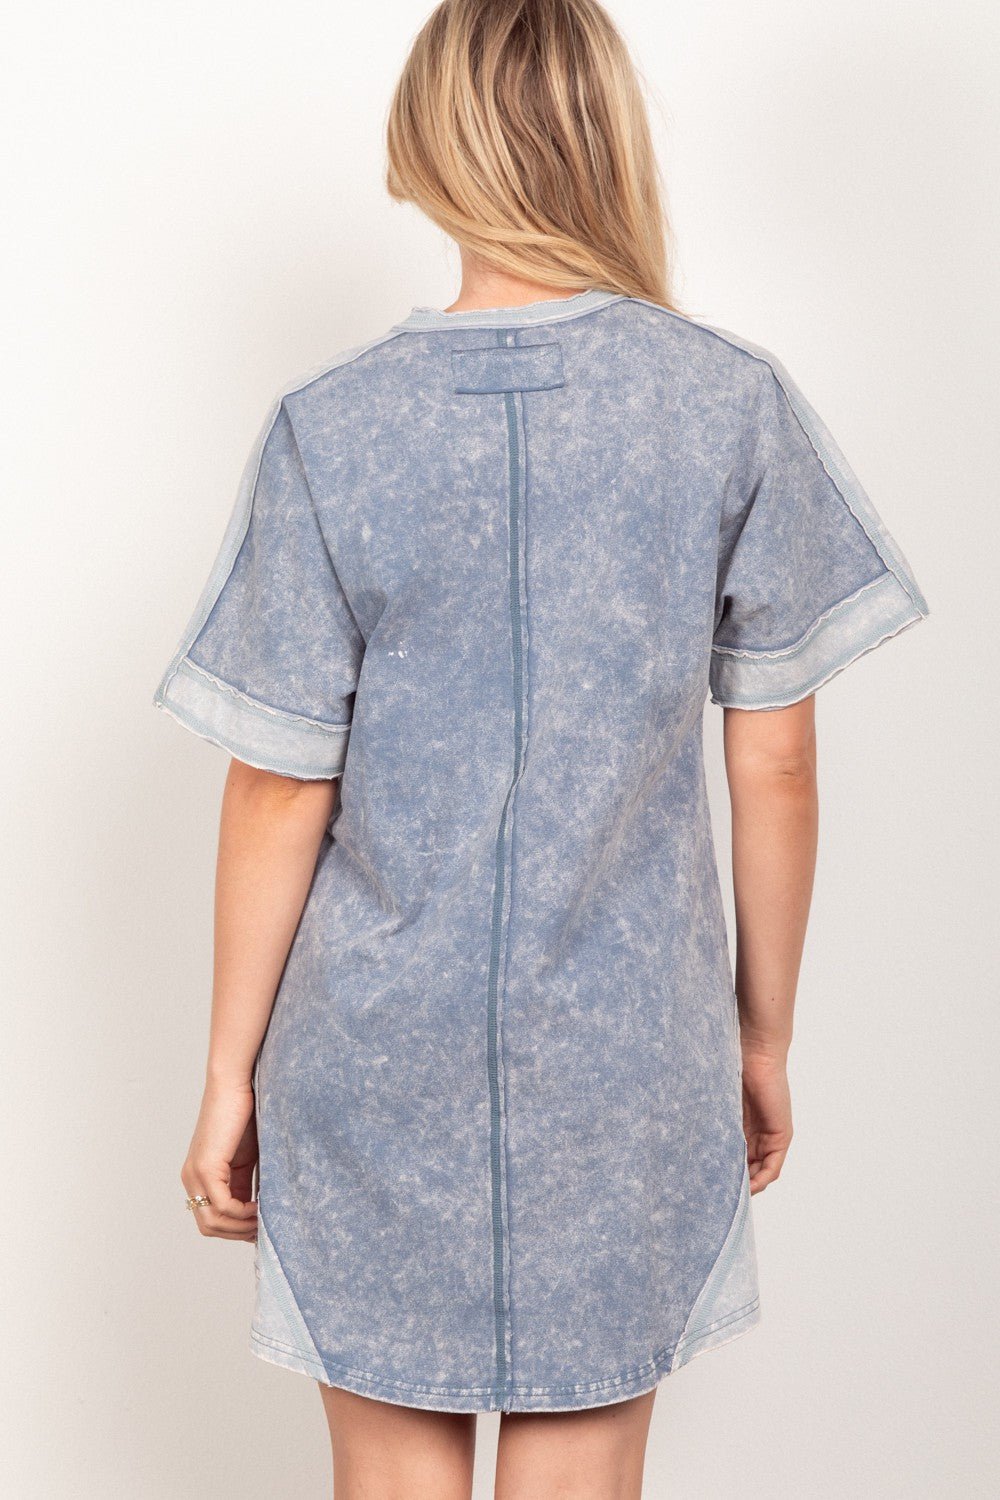 Short Sleeve V-Neck Mini Tee Dress in DenimMini DressVery J